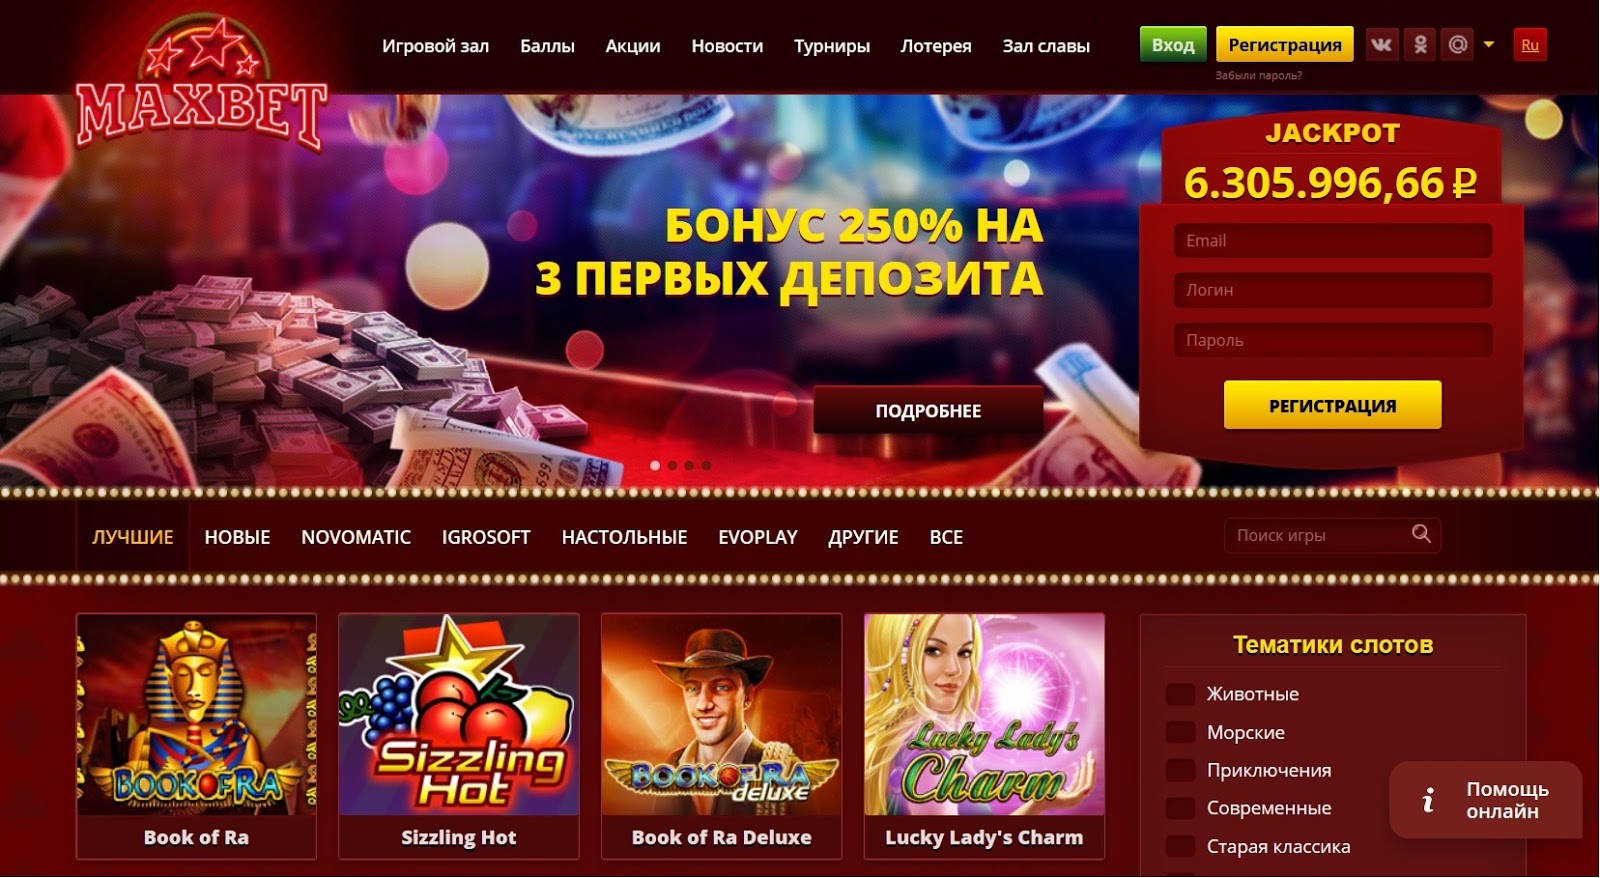 Казино максбет официальный сайт maxbet casino ru казино калининград официальный сайт